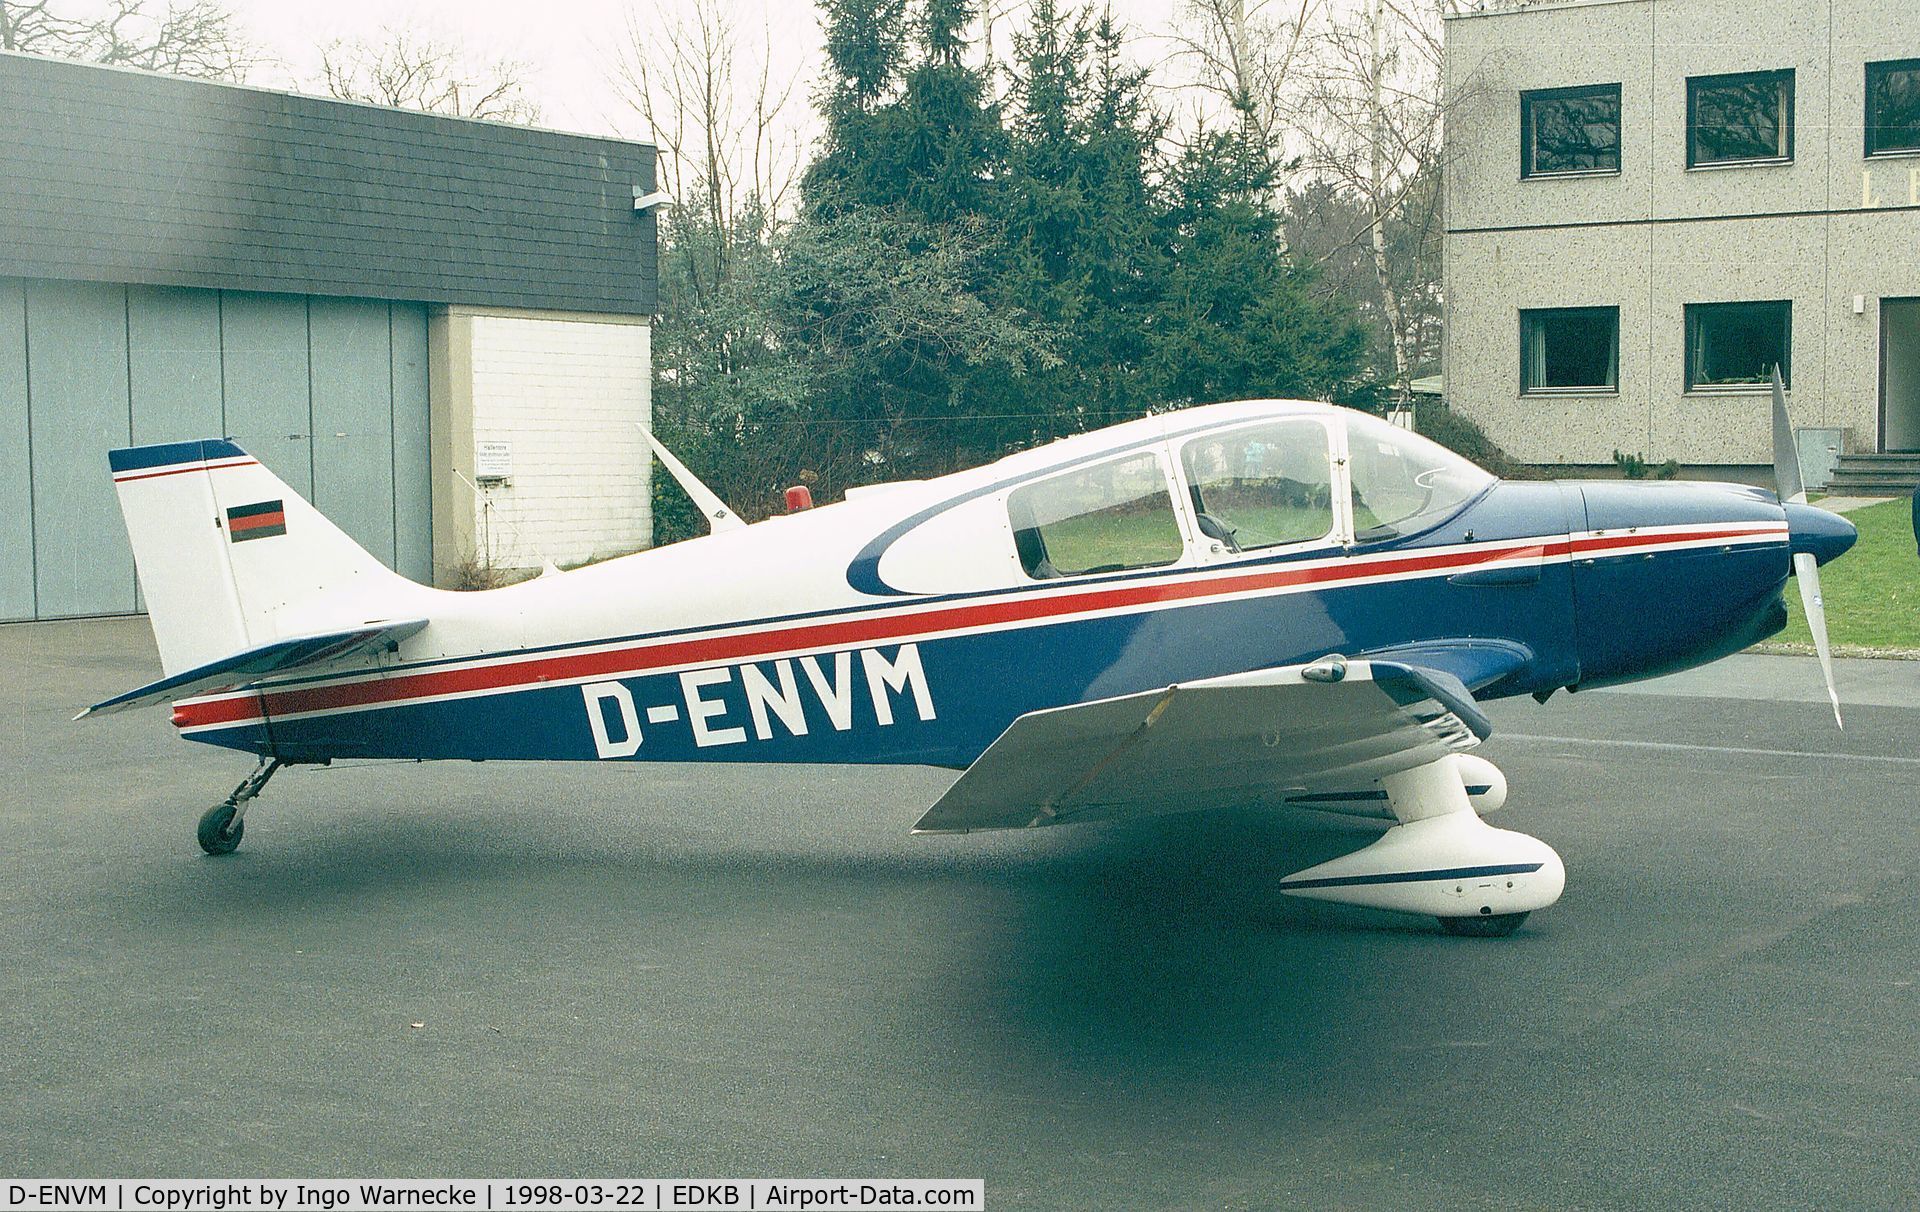 D-ENVM, 1966 Jodel DR-250-160 Capitaine C/N 73, CEA DR.250/160 Capitaine at Bonn-Hangelar airfield